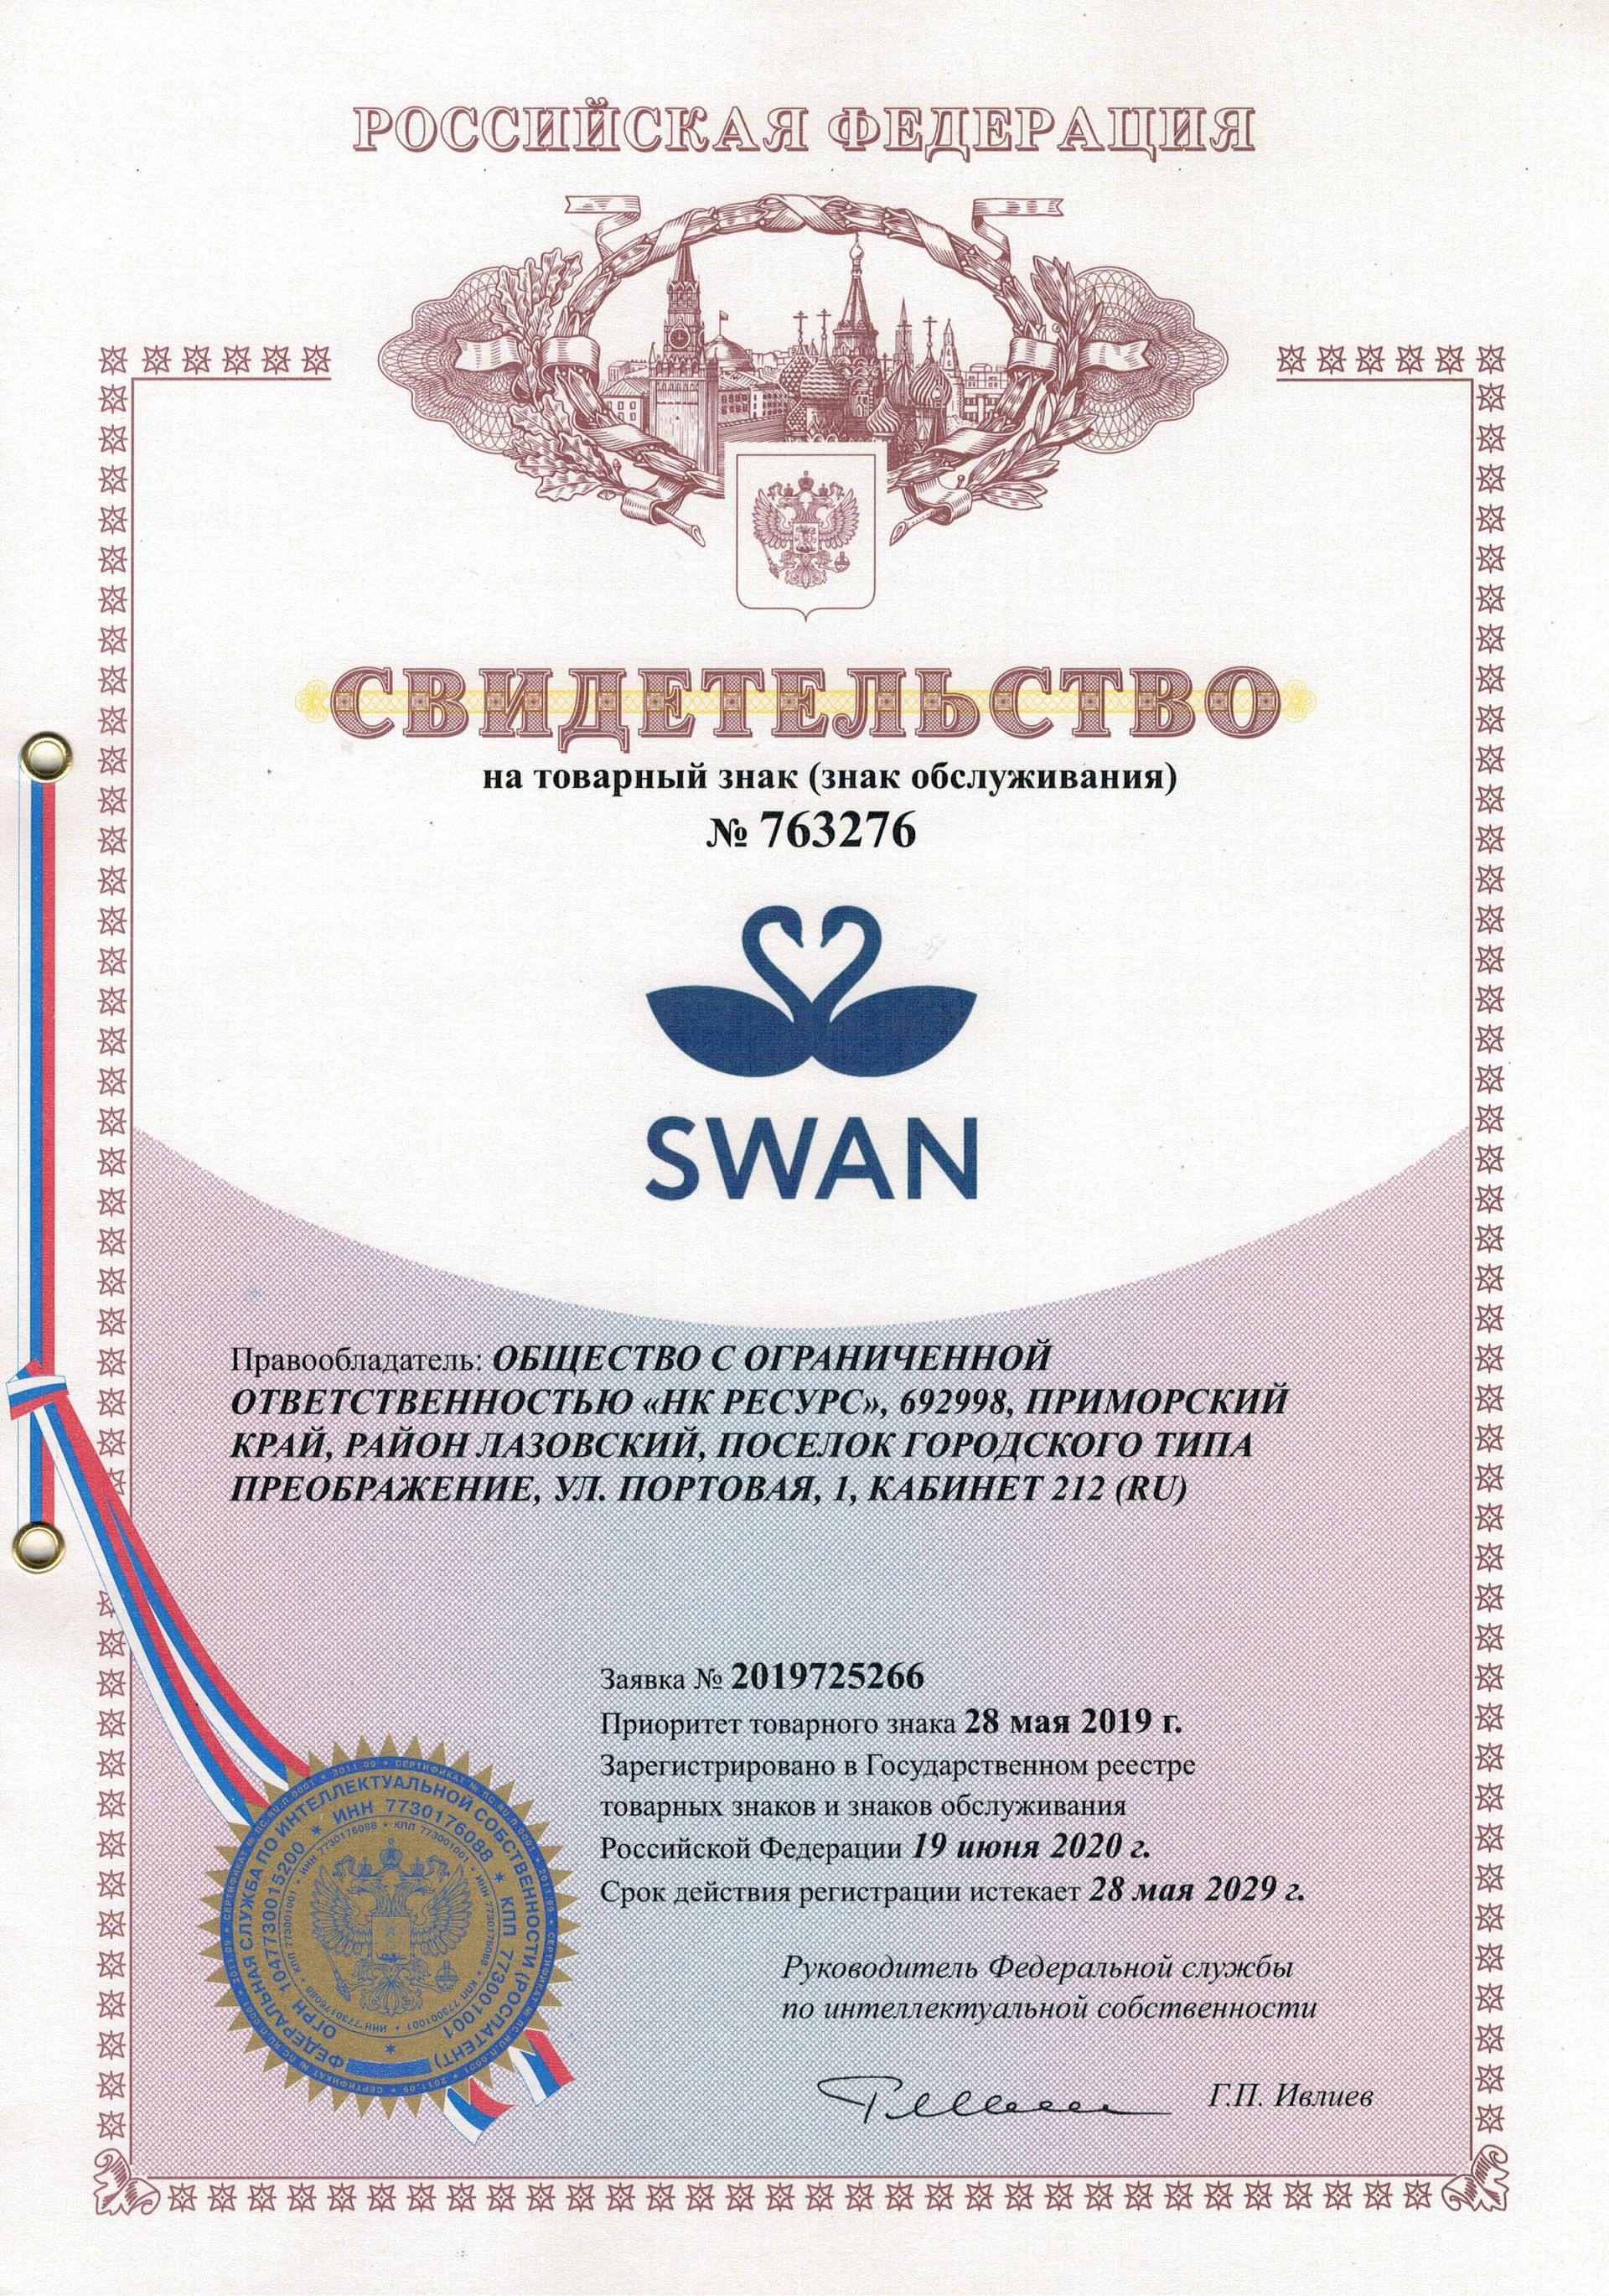 Товарный знак № 763276 – Swan